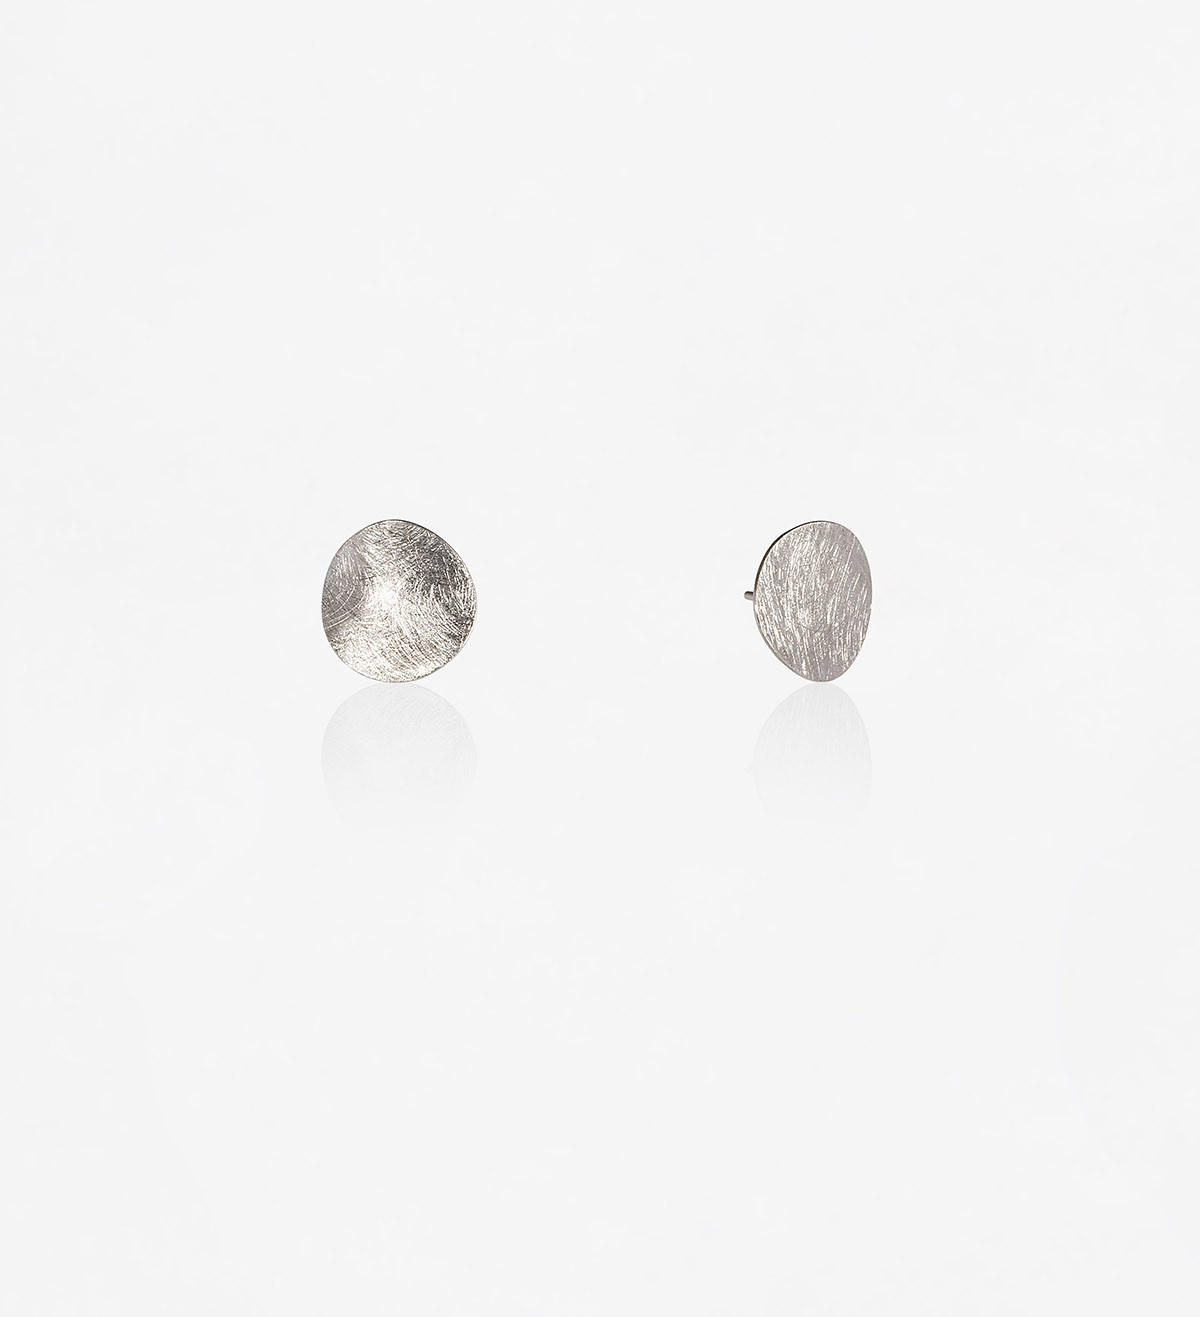 Silver earrings Xips 11mm